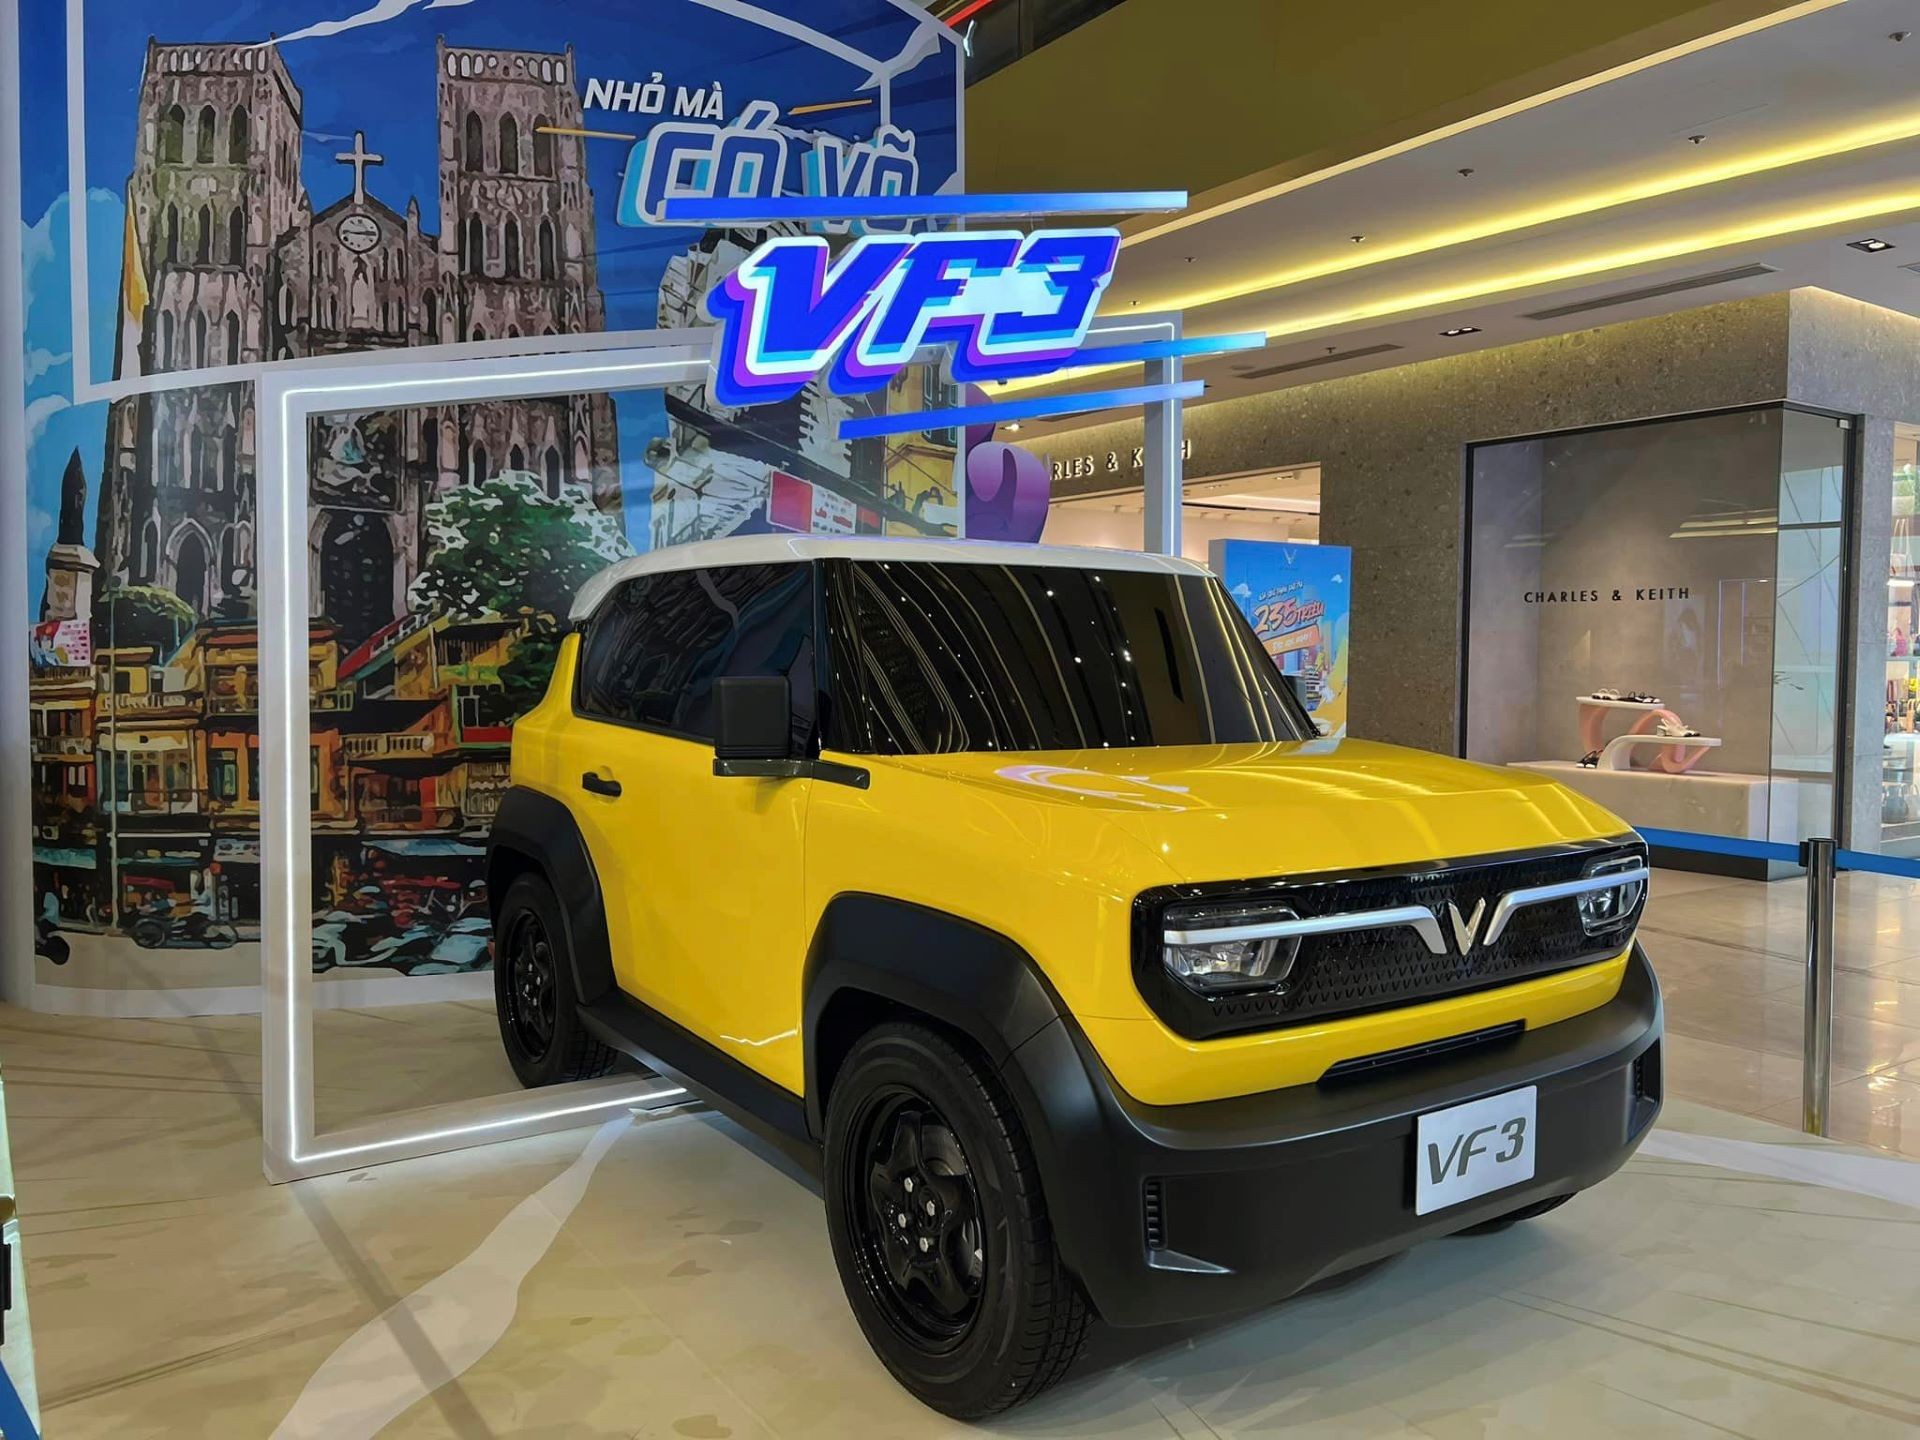 Kỷ lục thị trường ô tô Việt: Cứ hơn 8 giây có một người chốt cọc VinFast VF 3 ảnh 4